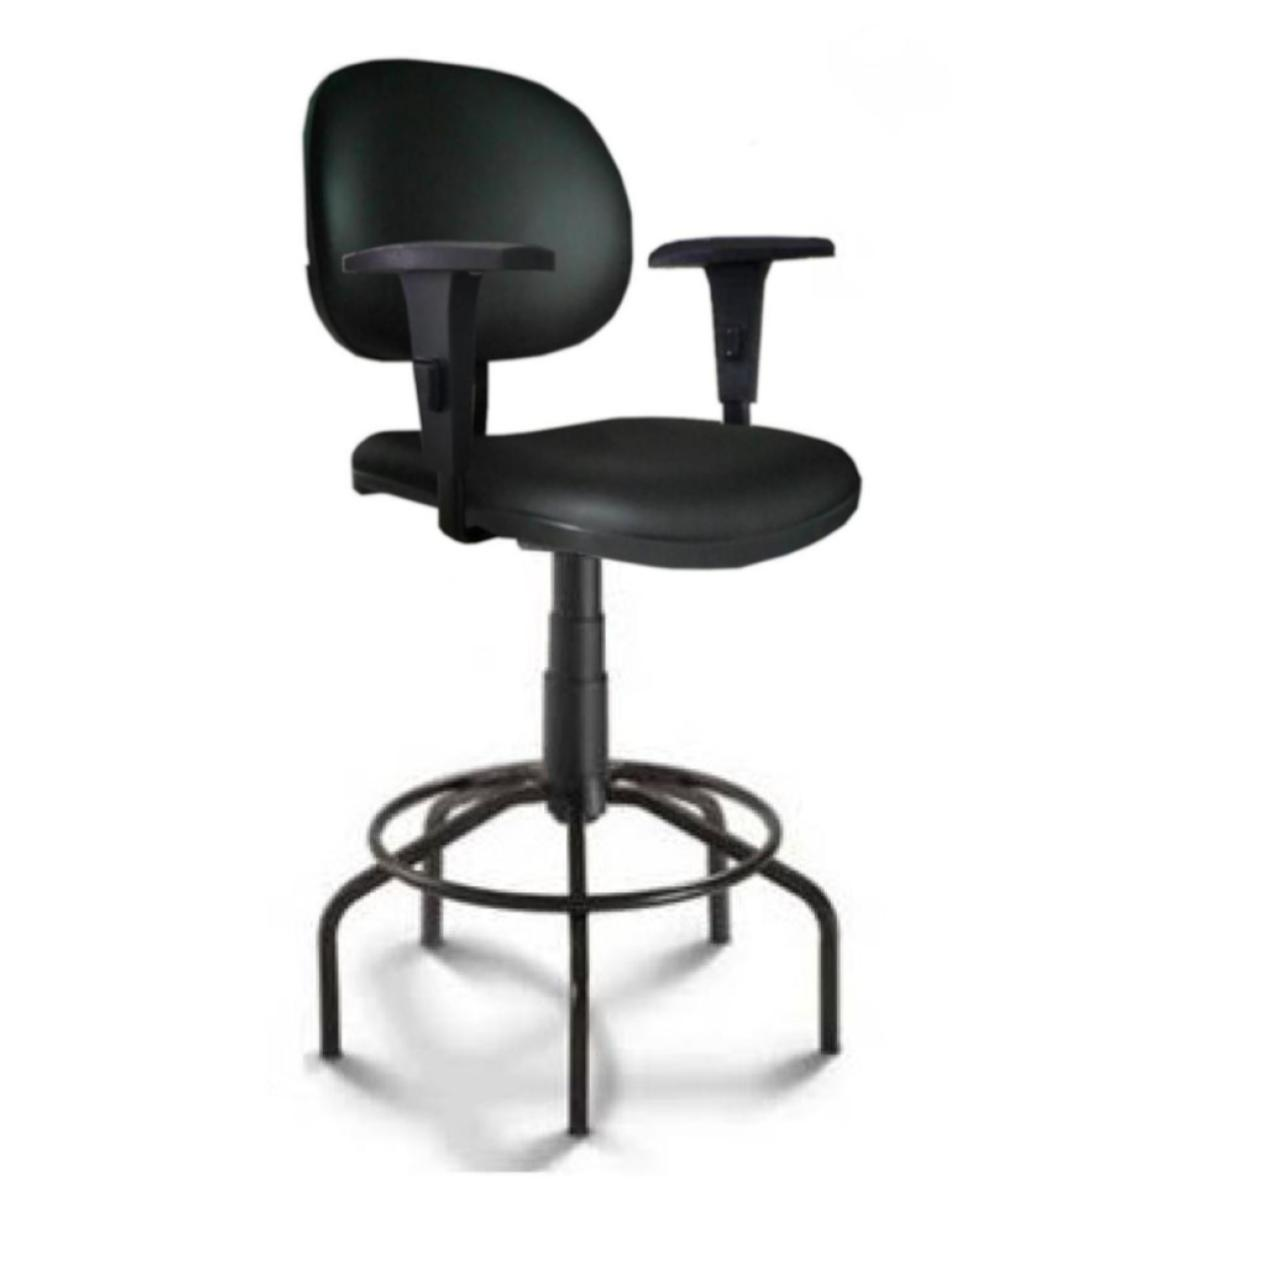 Cadeira Caixa EXECUTIVA LISA com Braços Reguláveis – (Aranha MARTIFLEX) – Cor Preta